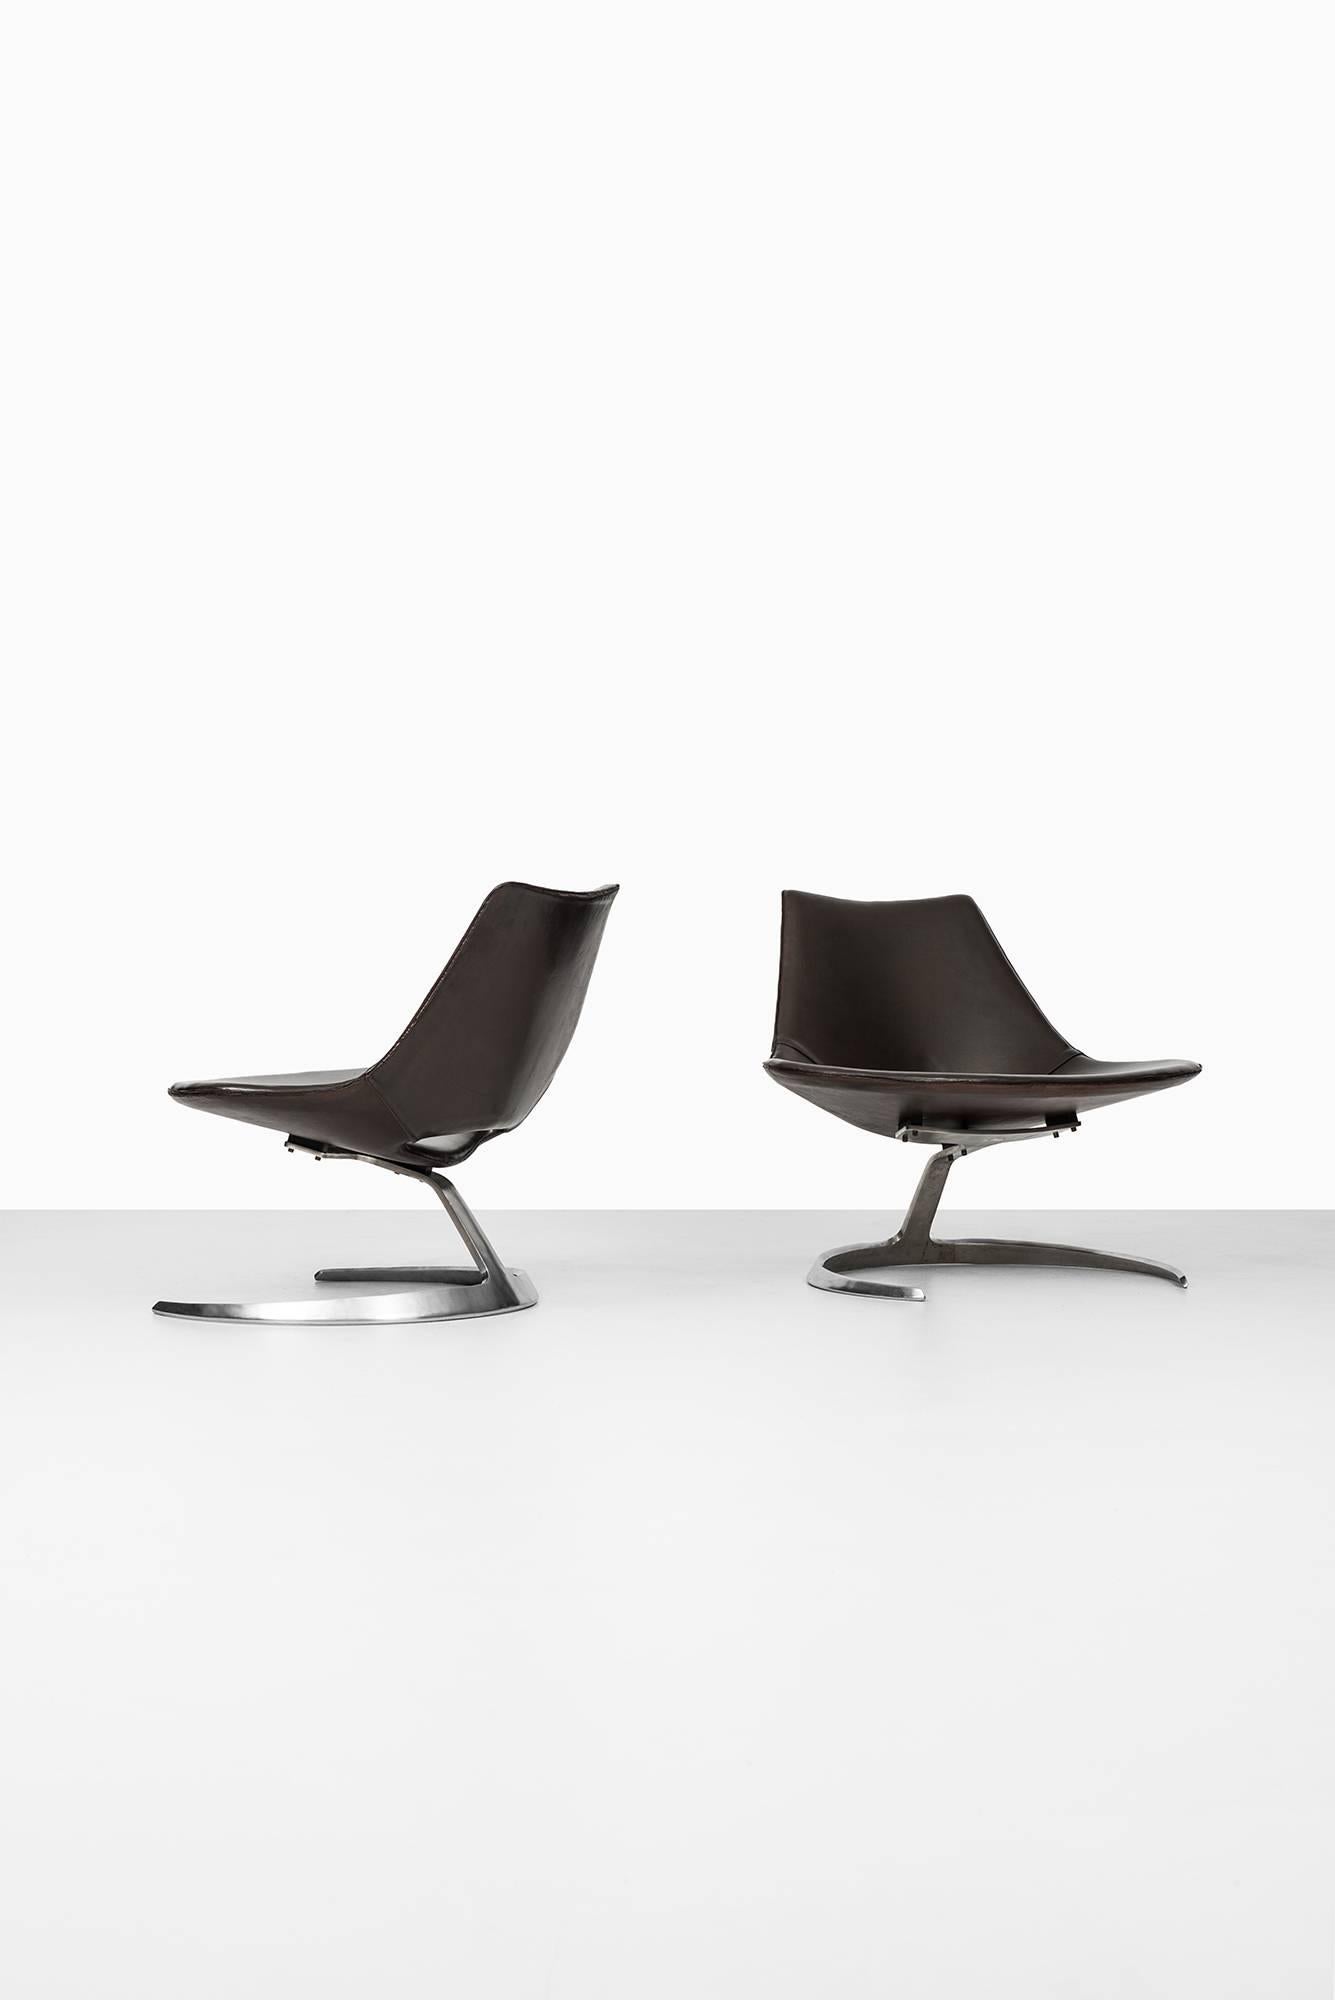 Preben Fabricius & Jørgen Kastholm Scimitar Chairs by Ivan Schlecter in Denmark 1